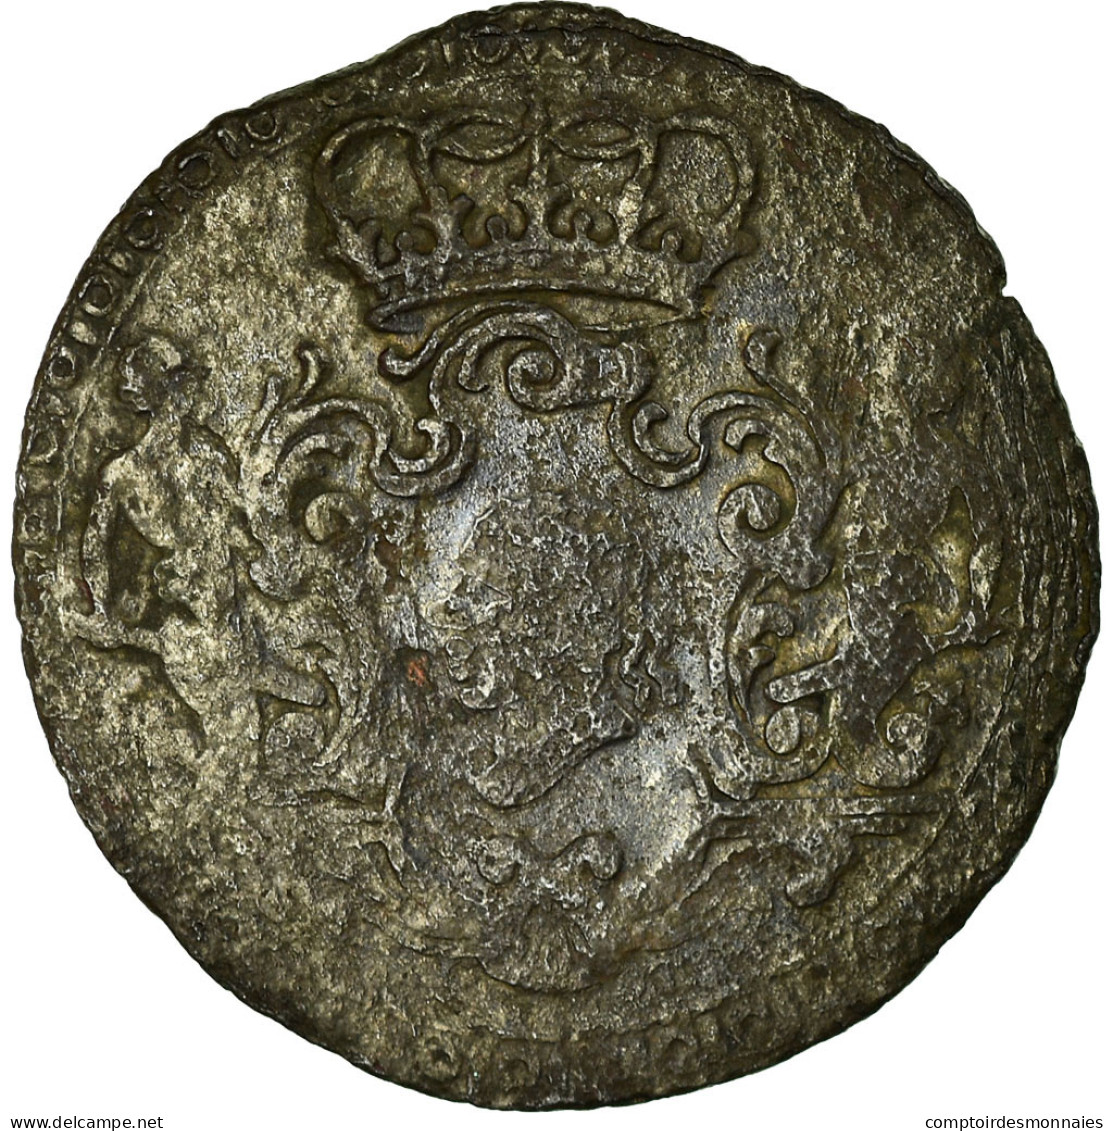 Monnaie, États Italiens, CORSICA, General Pasquale Paoli, 4 Soldi, 1764 - Corse (1736-1768)